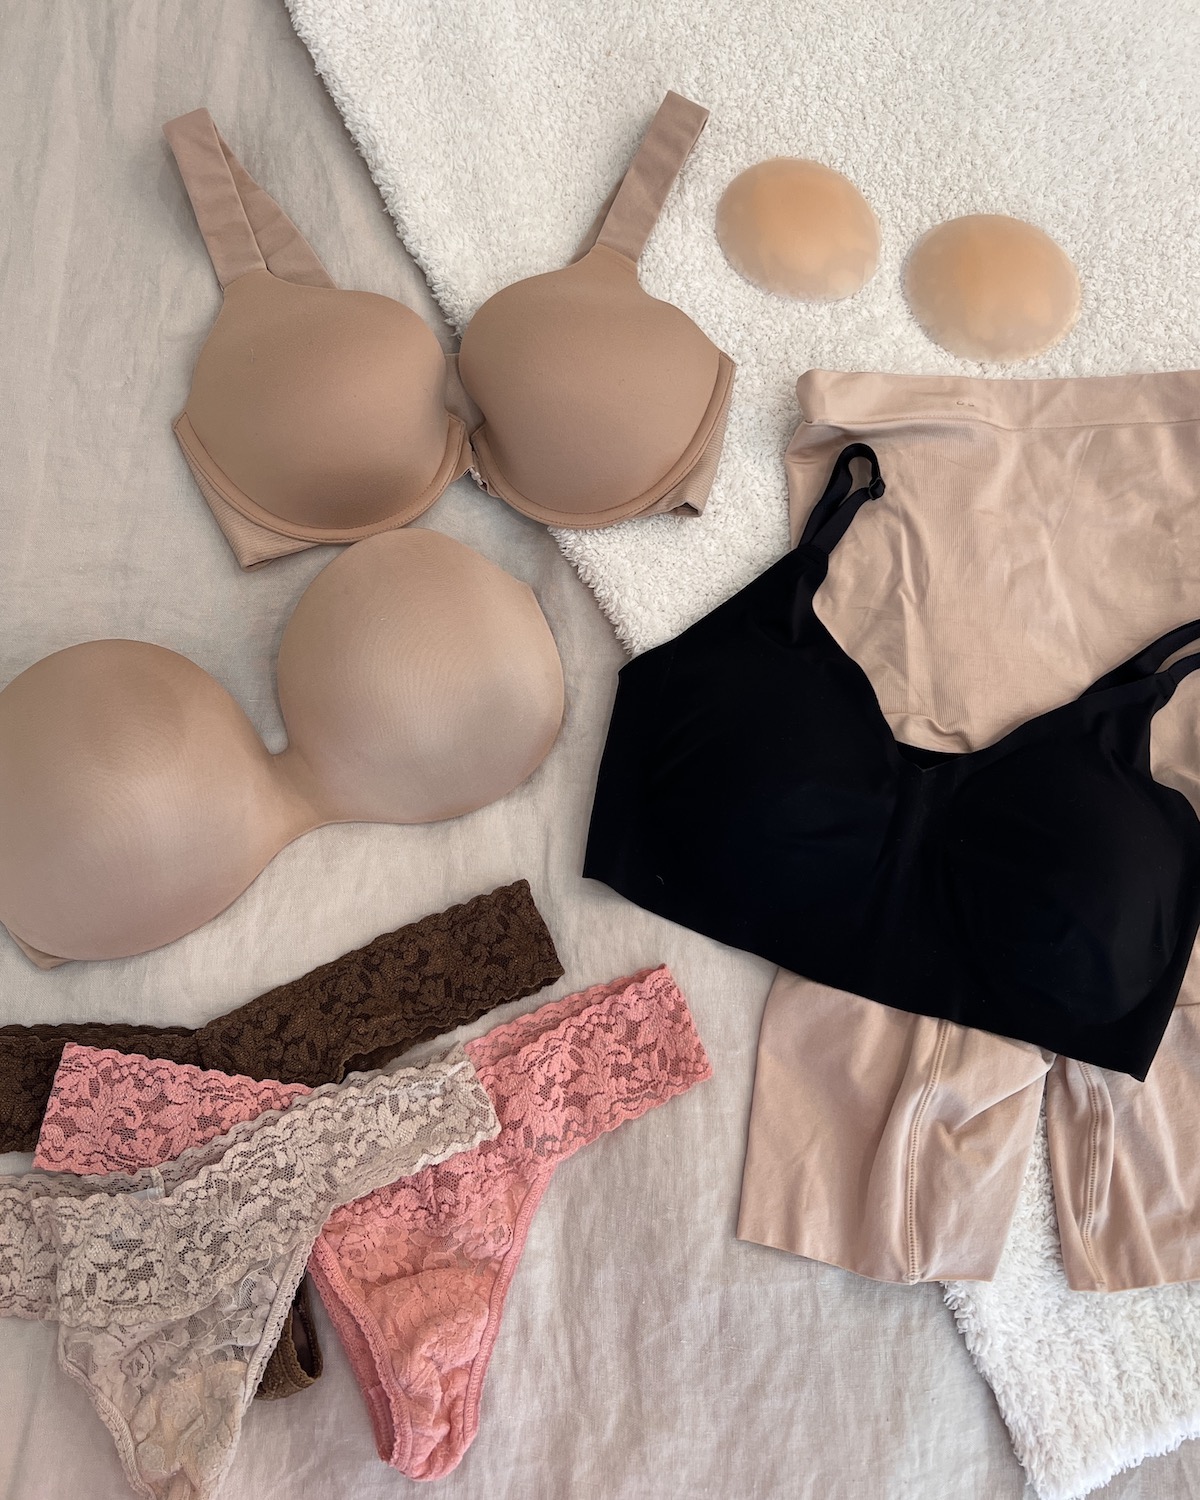 The Bra Co - bras and panties